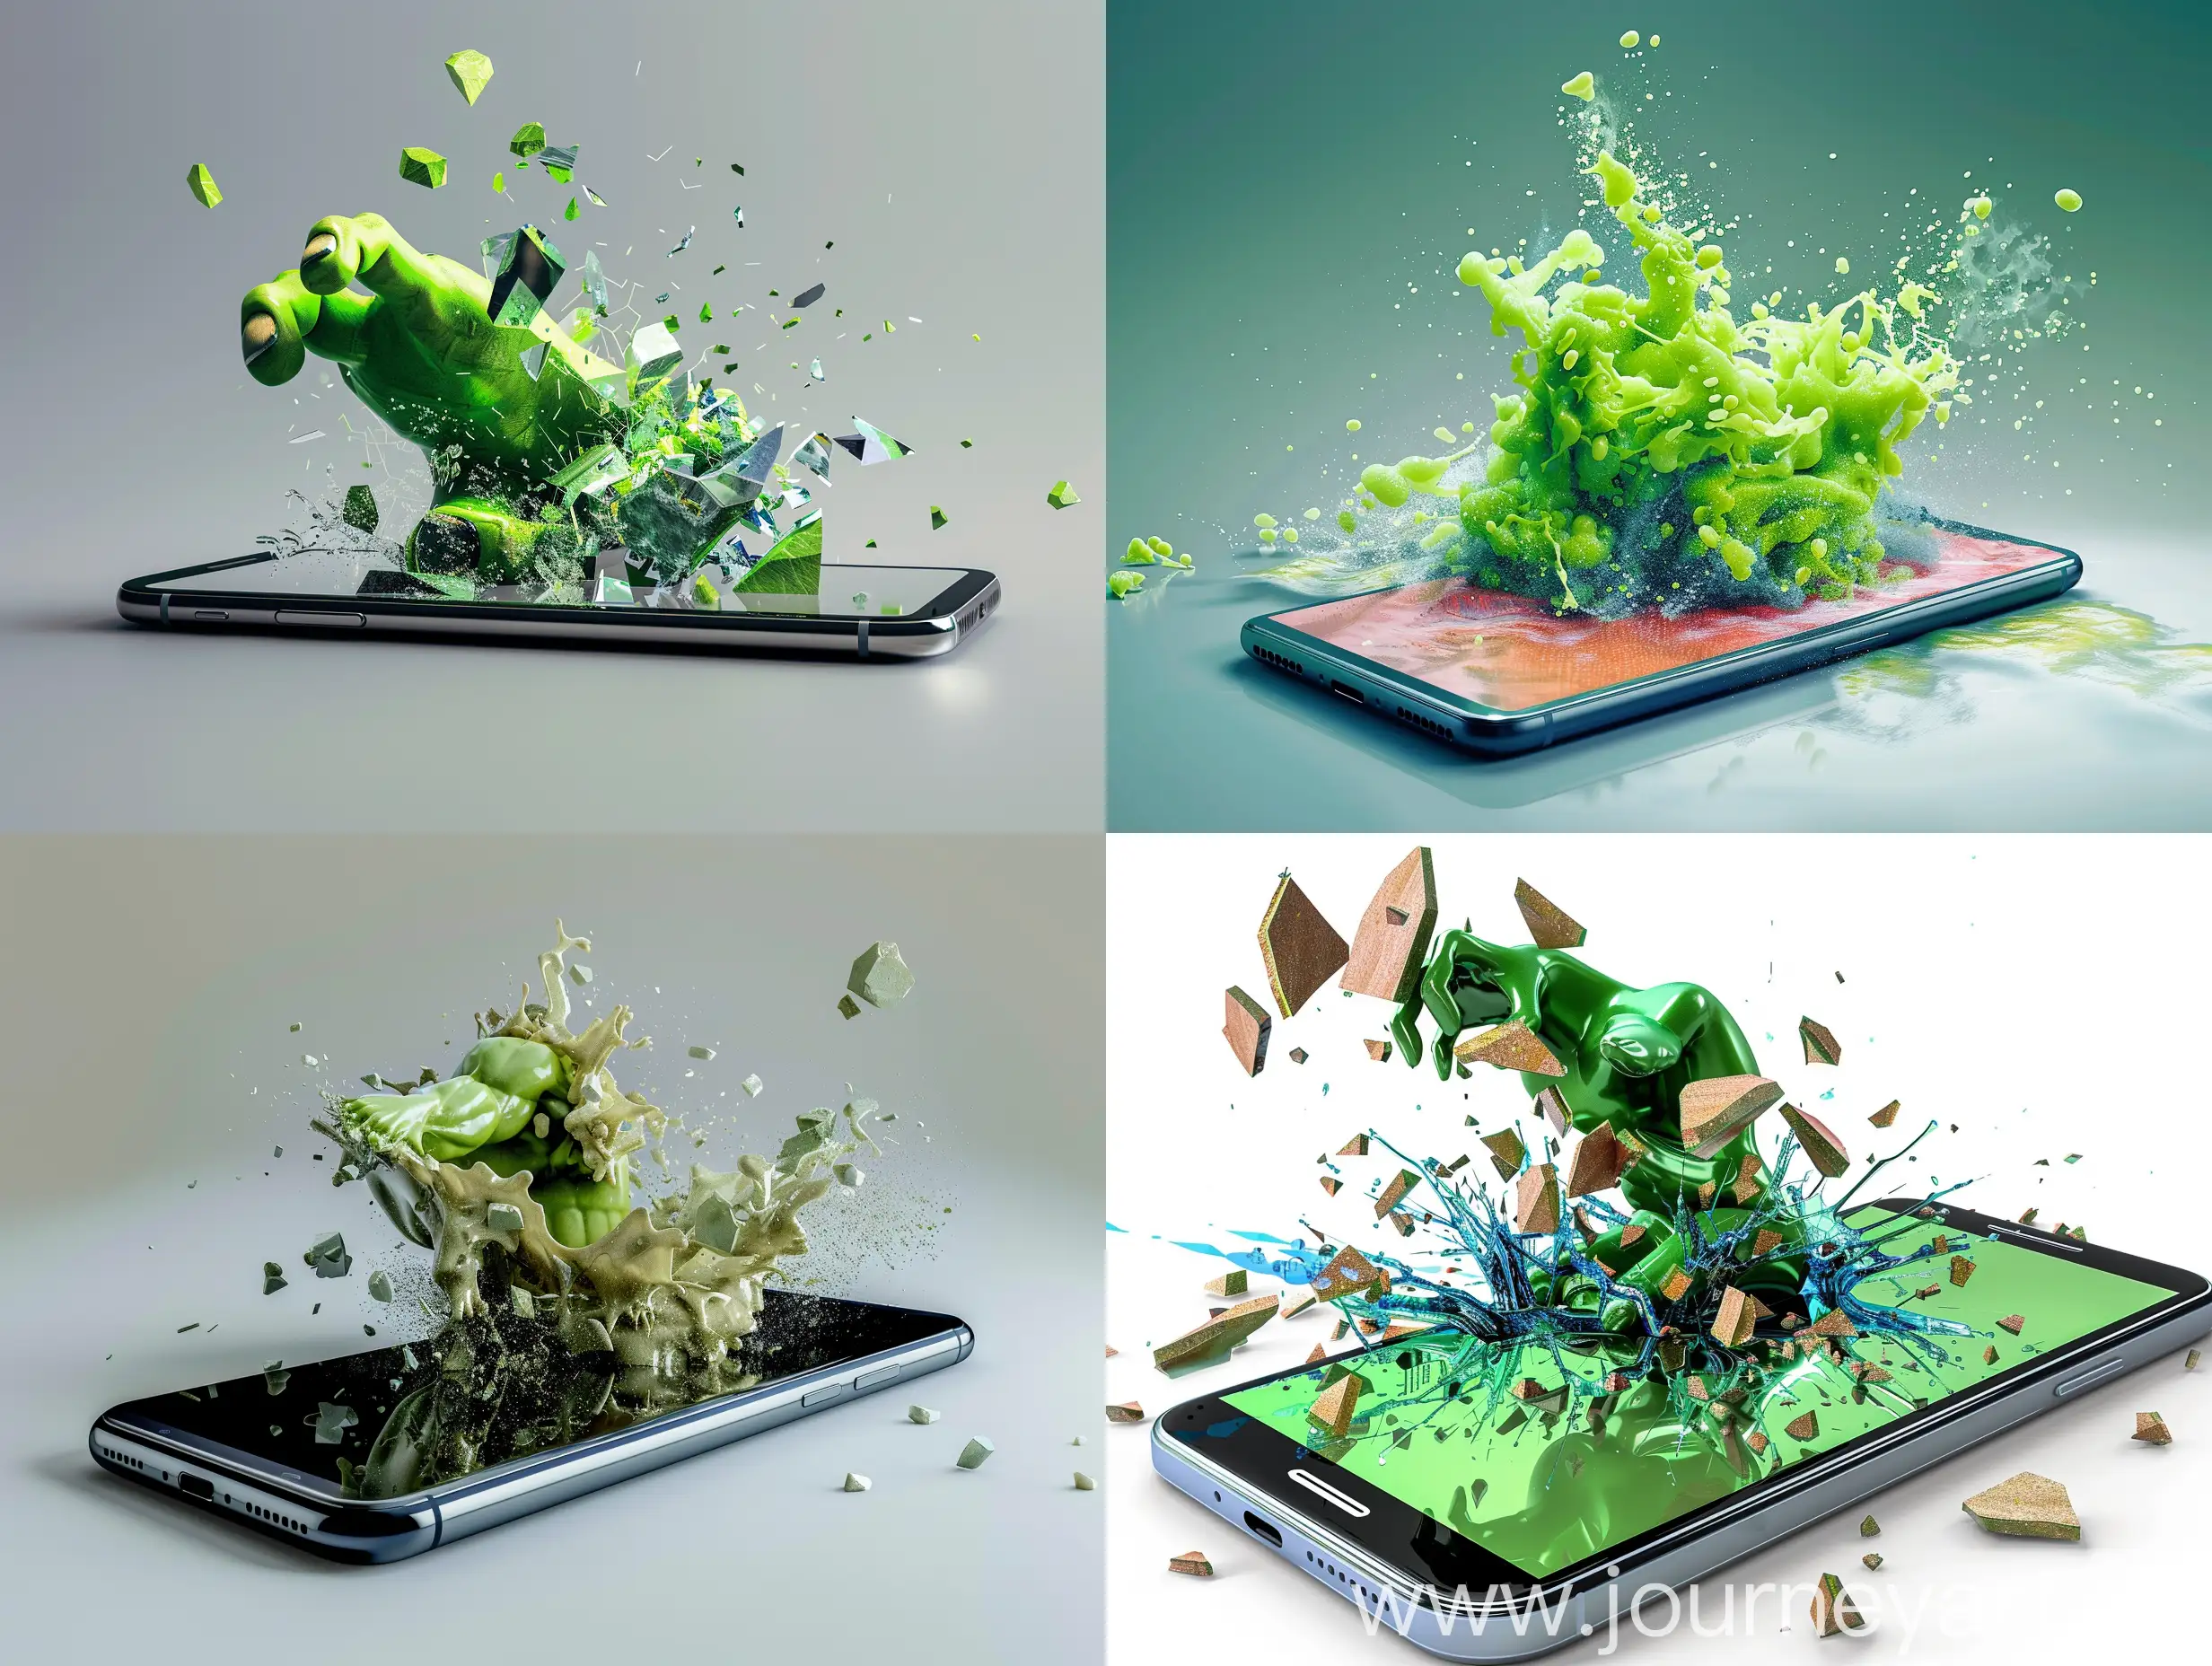 一张智能手机的照片，屏幕中有一个3D突出的绿巨人正在破屏而出，采用超现实主义风格的图像。